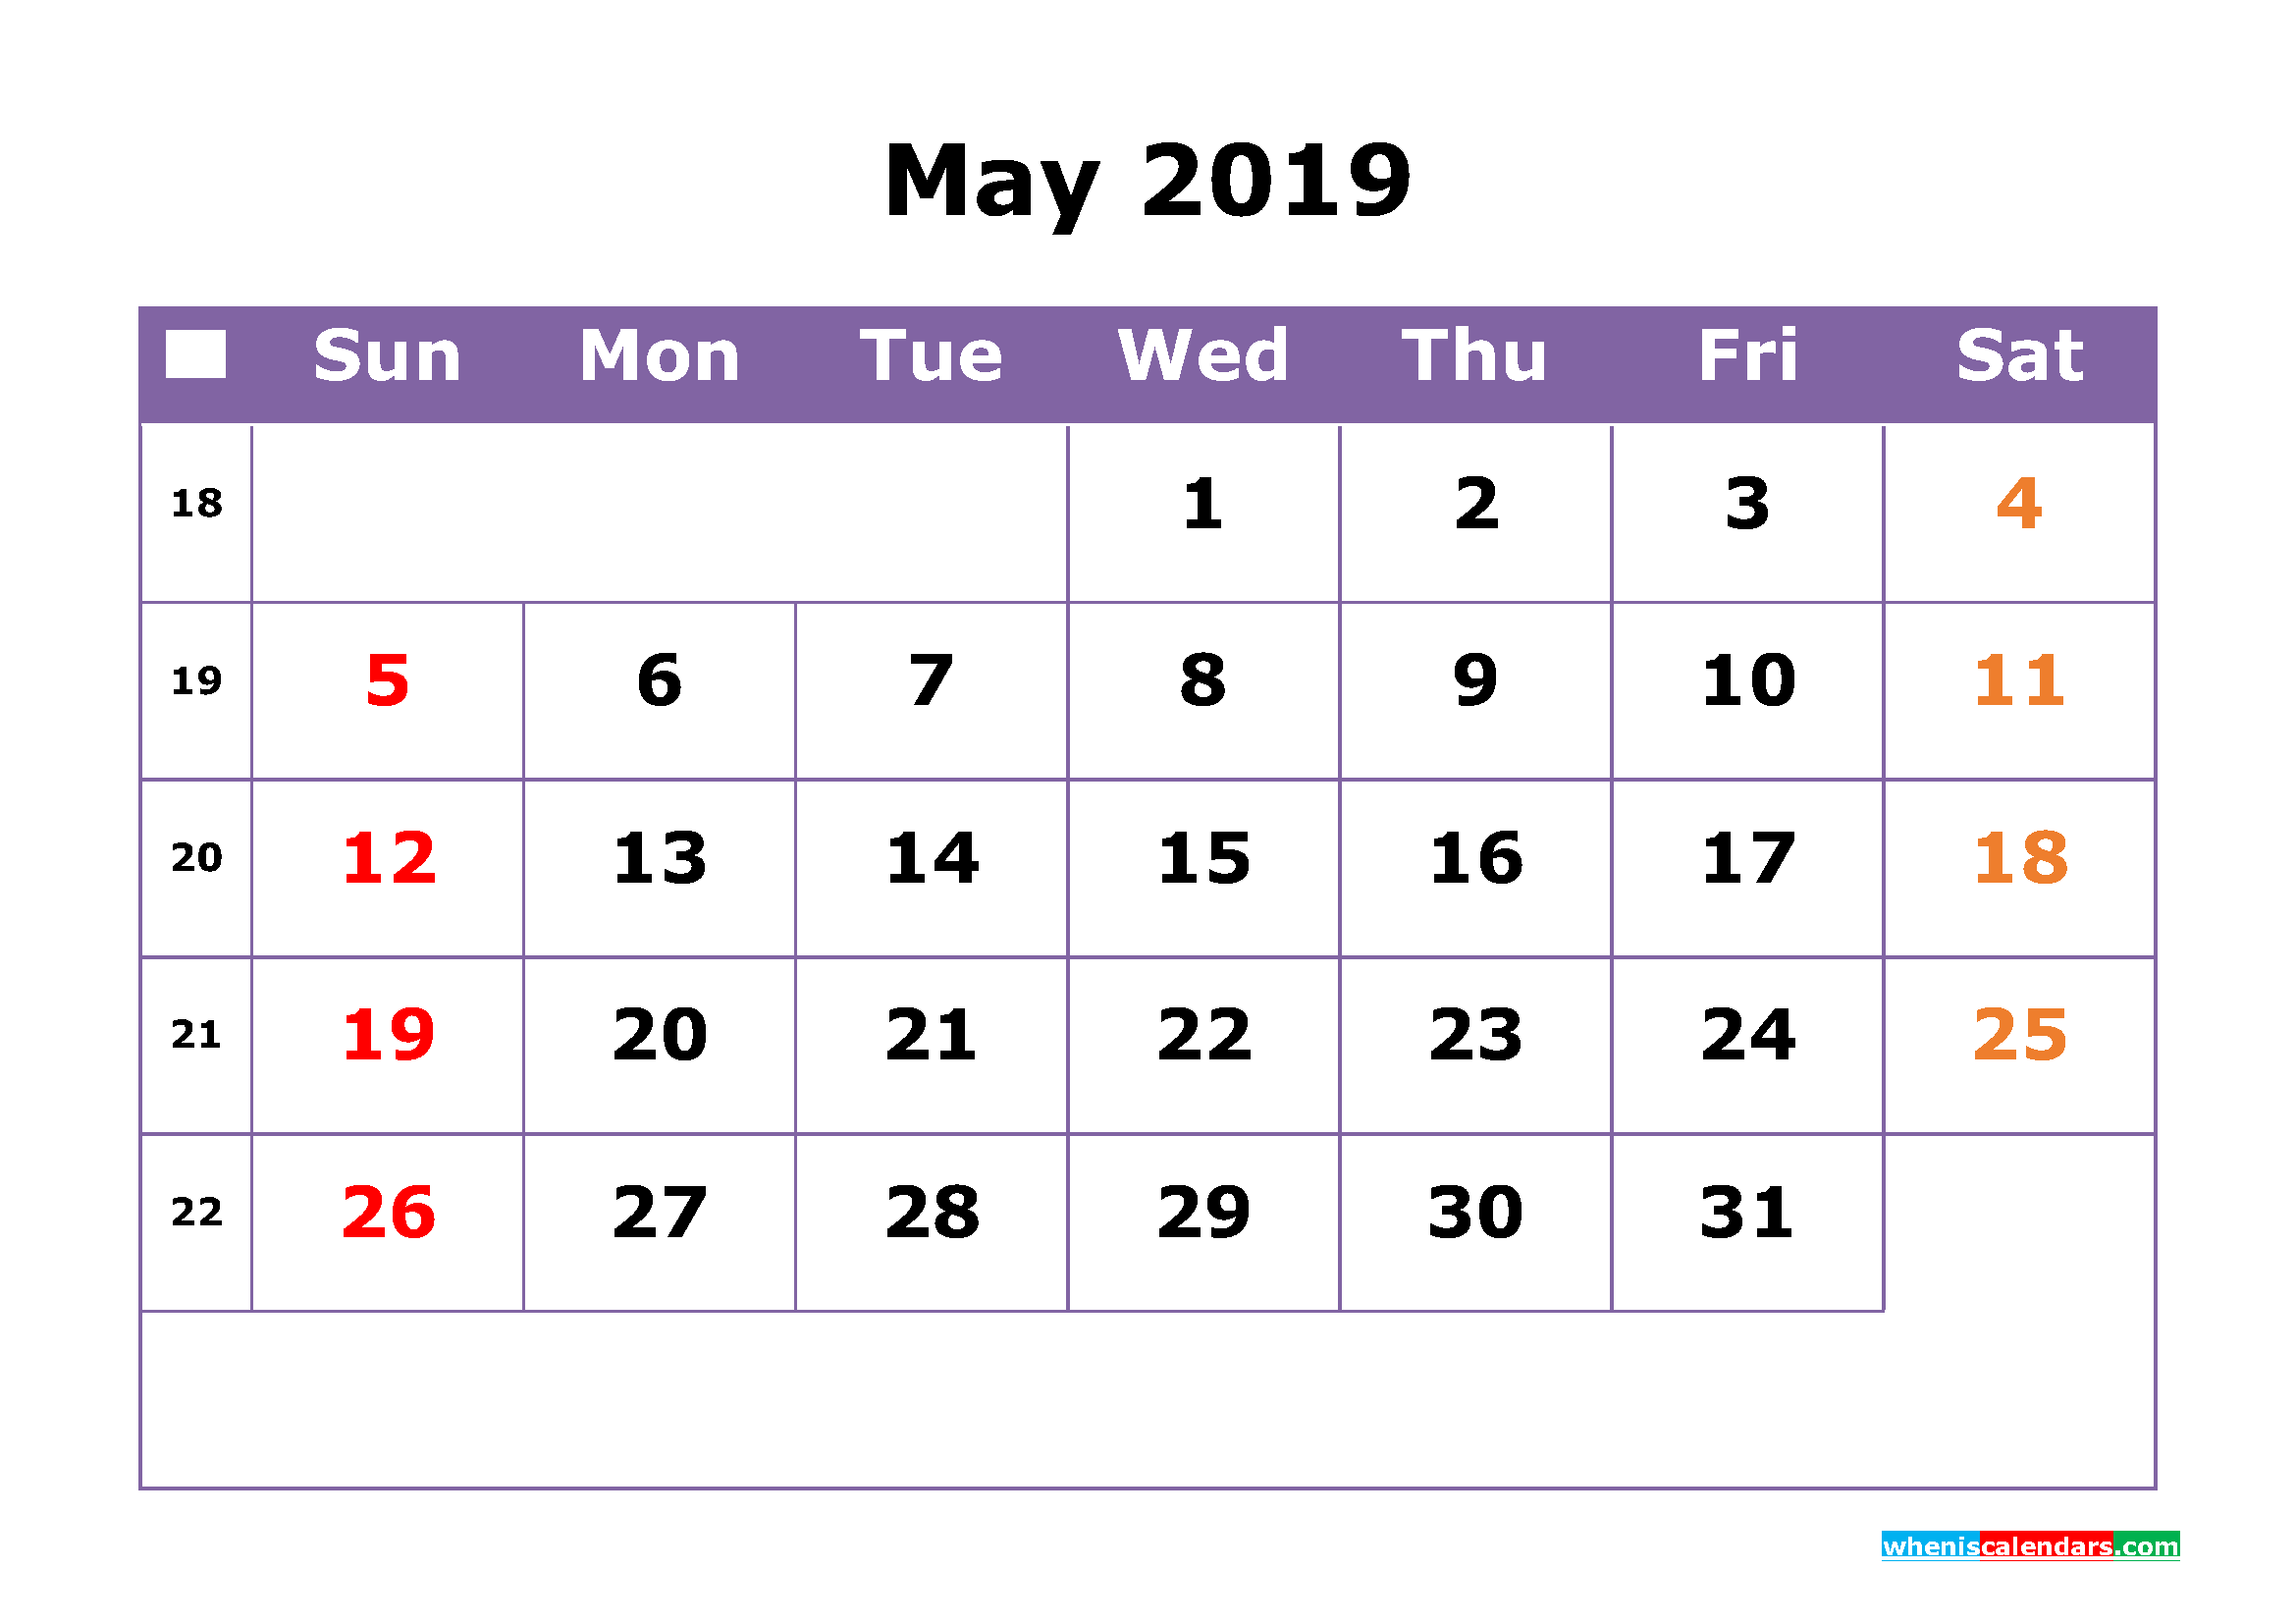 2019 calendar with week numbers